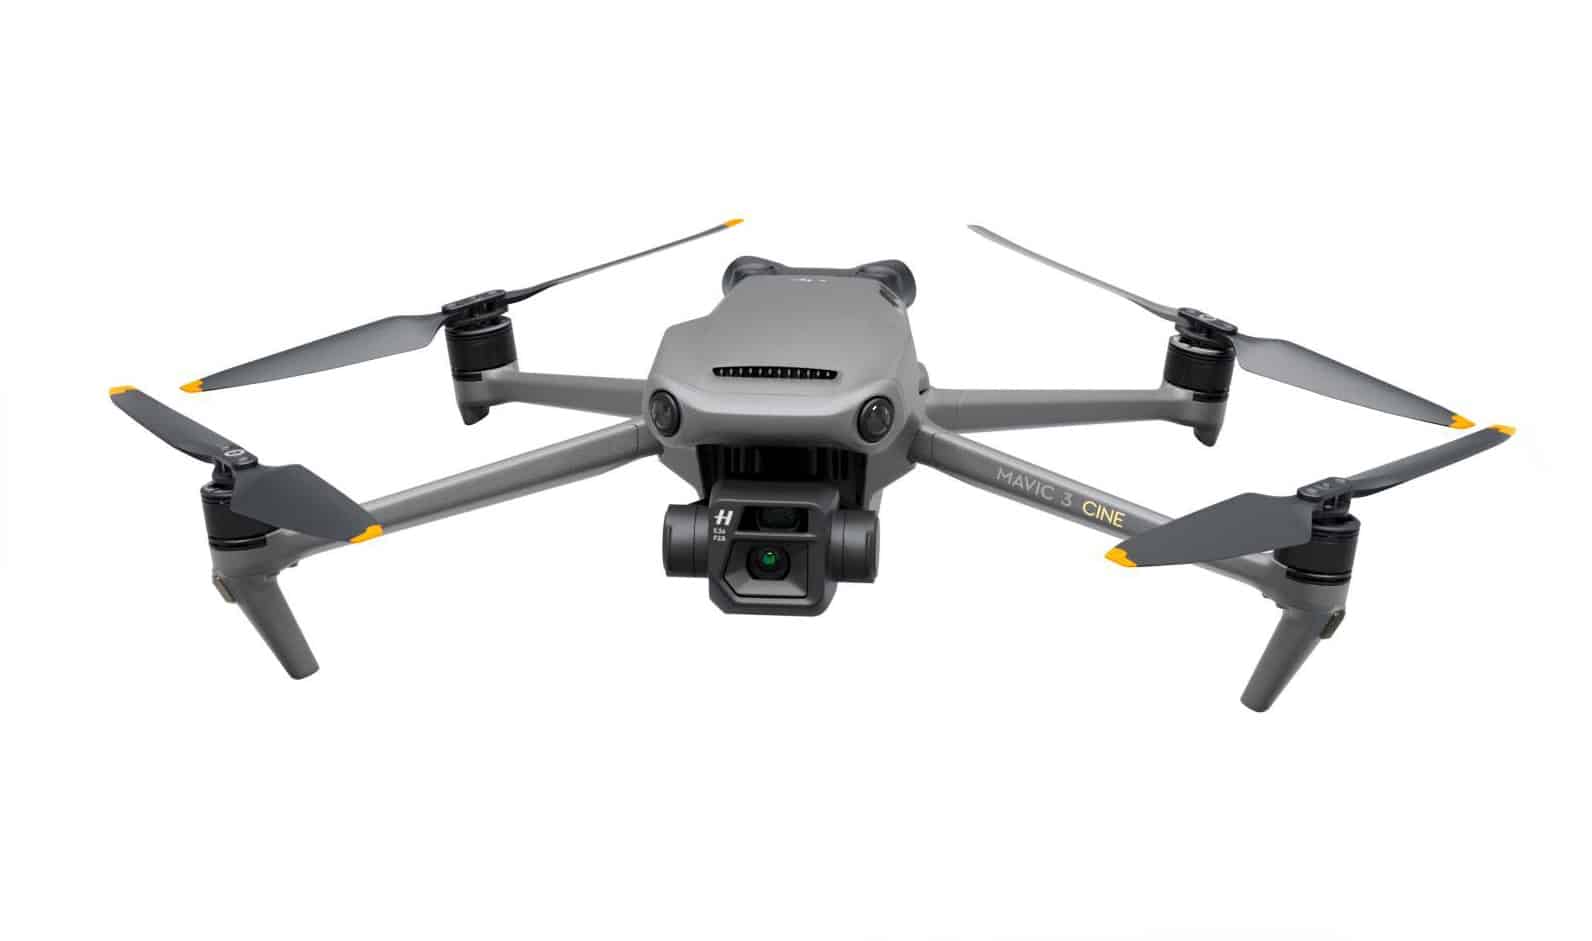 Halo Vue Aerial Photography have DJI Mavic 3 Cine Drones